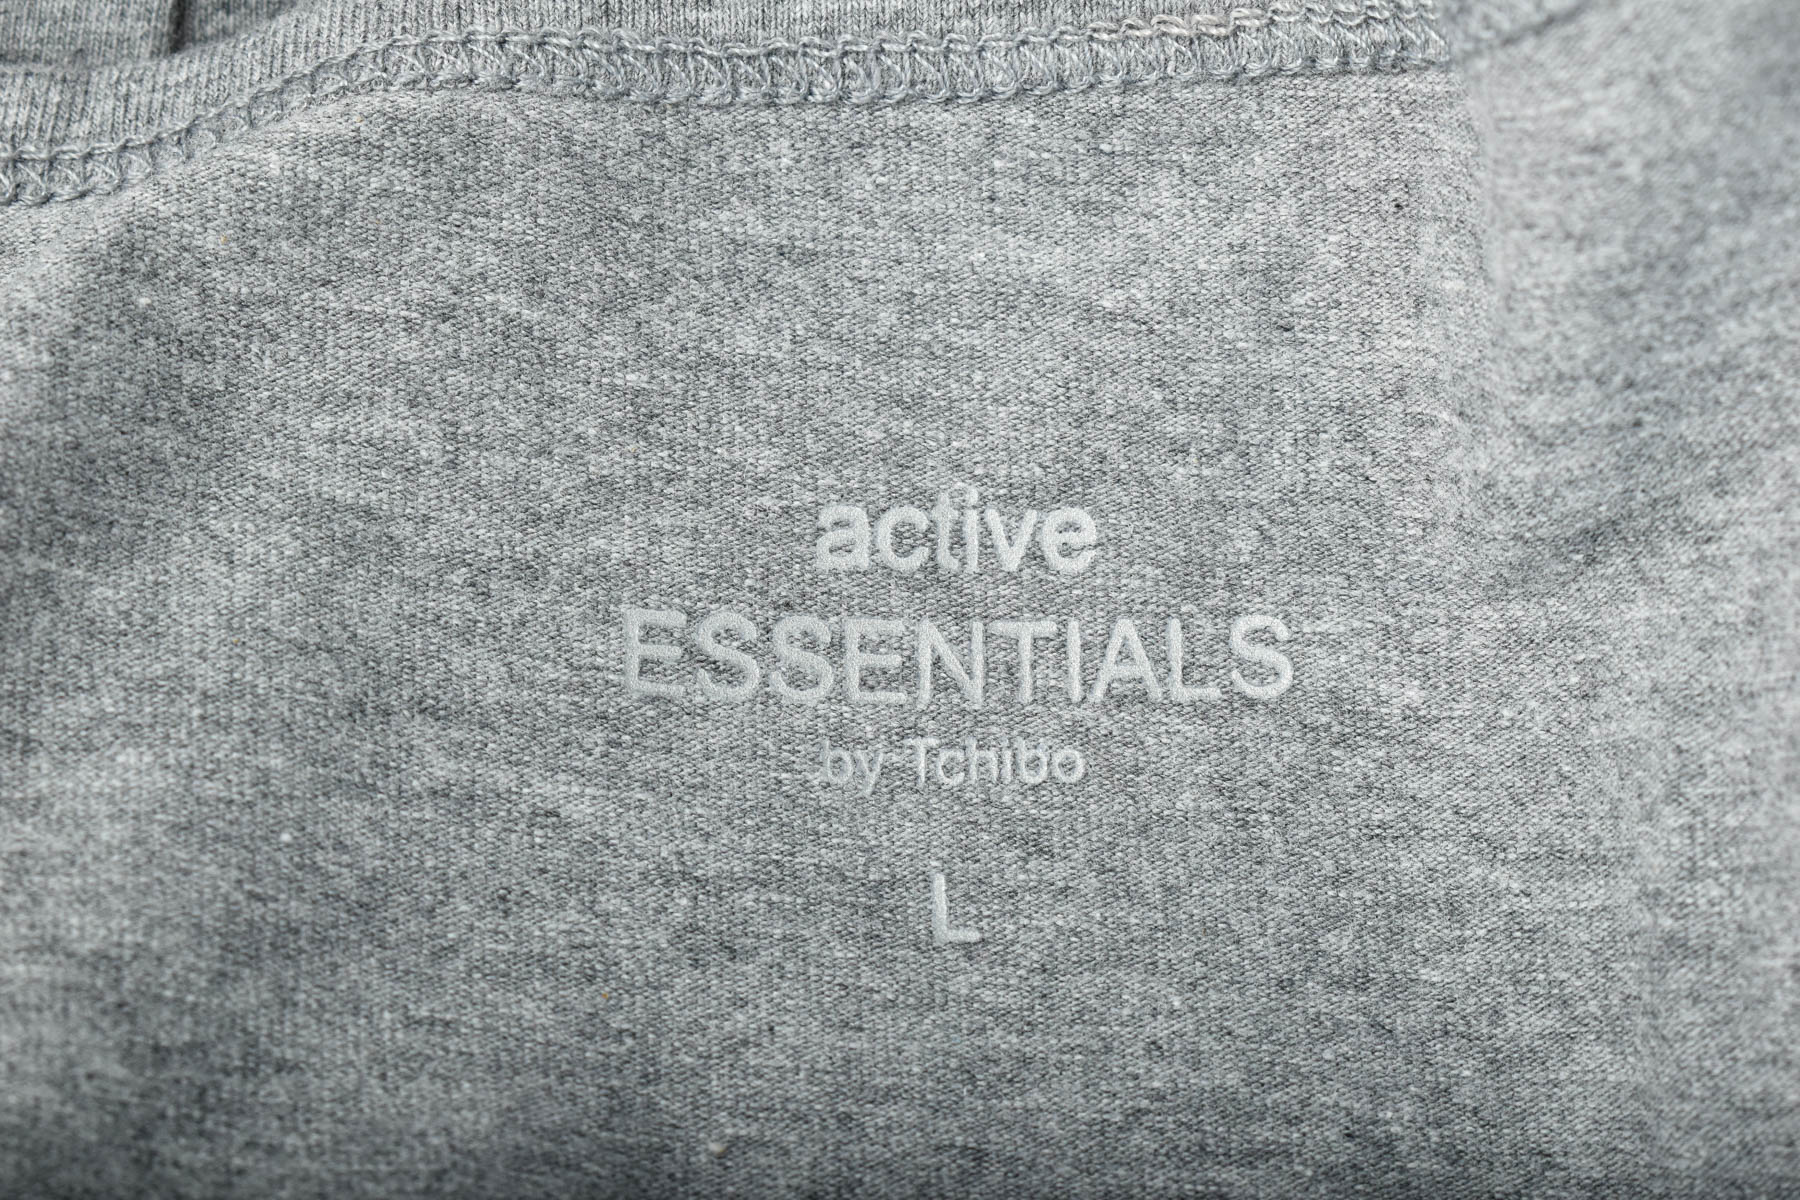 Damski podkoszulek - Active Essentials by Tchibo - 2